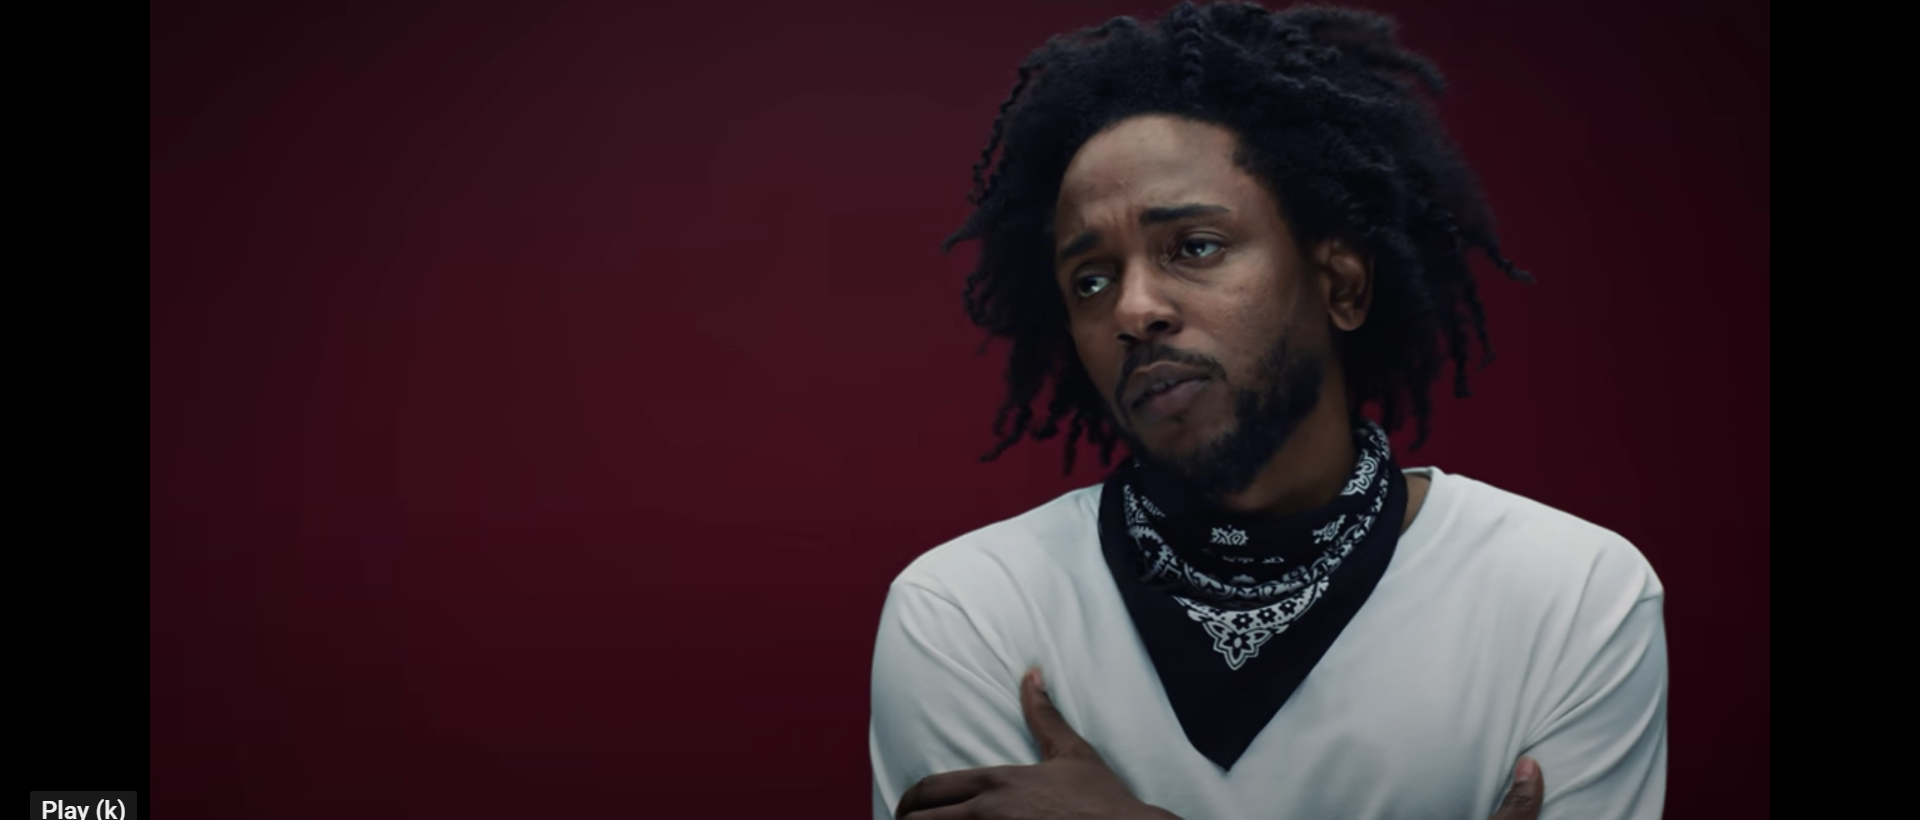 El nuevo video de Kendrick Lamar destaca los mayores escándalos del entretenimiento